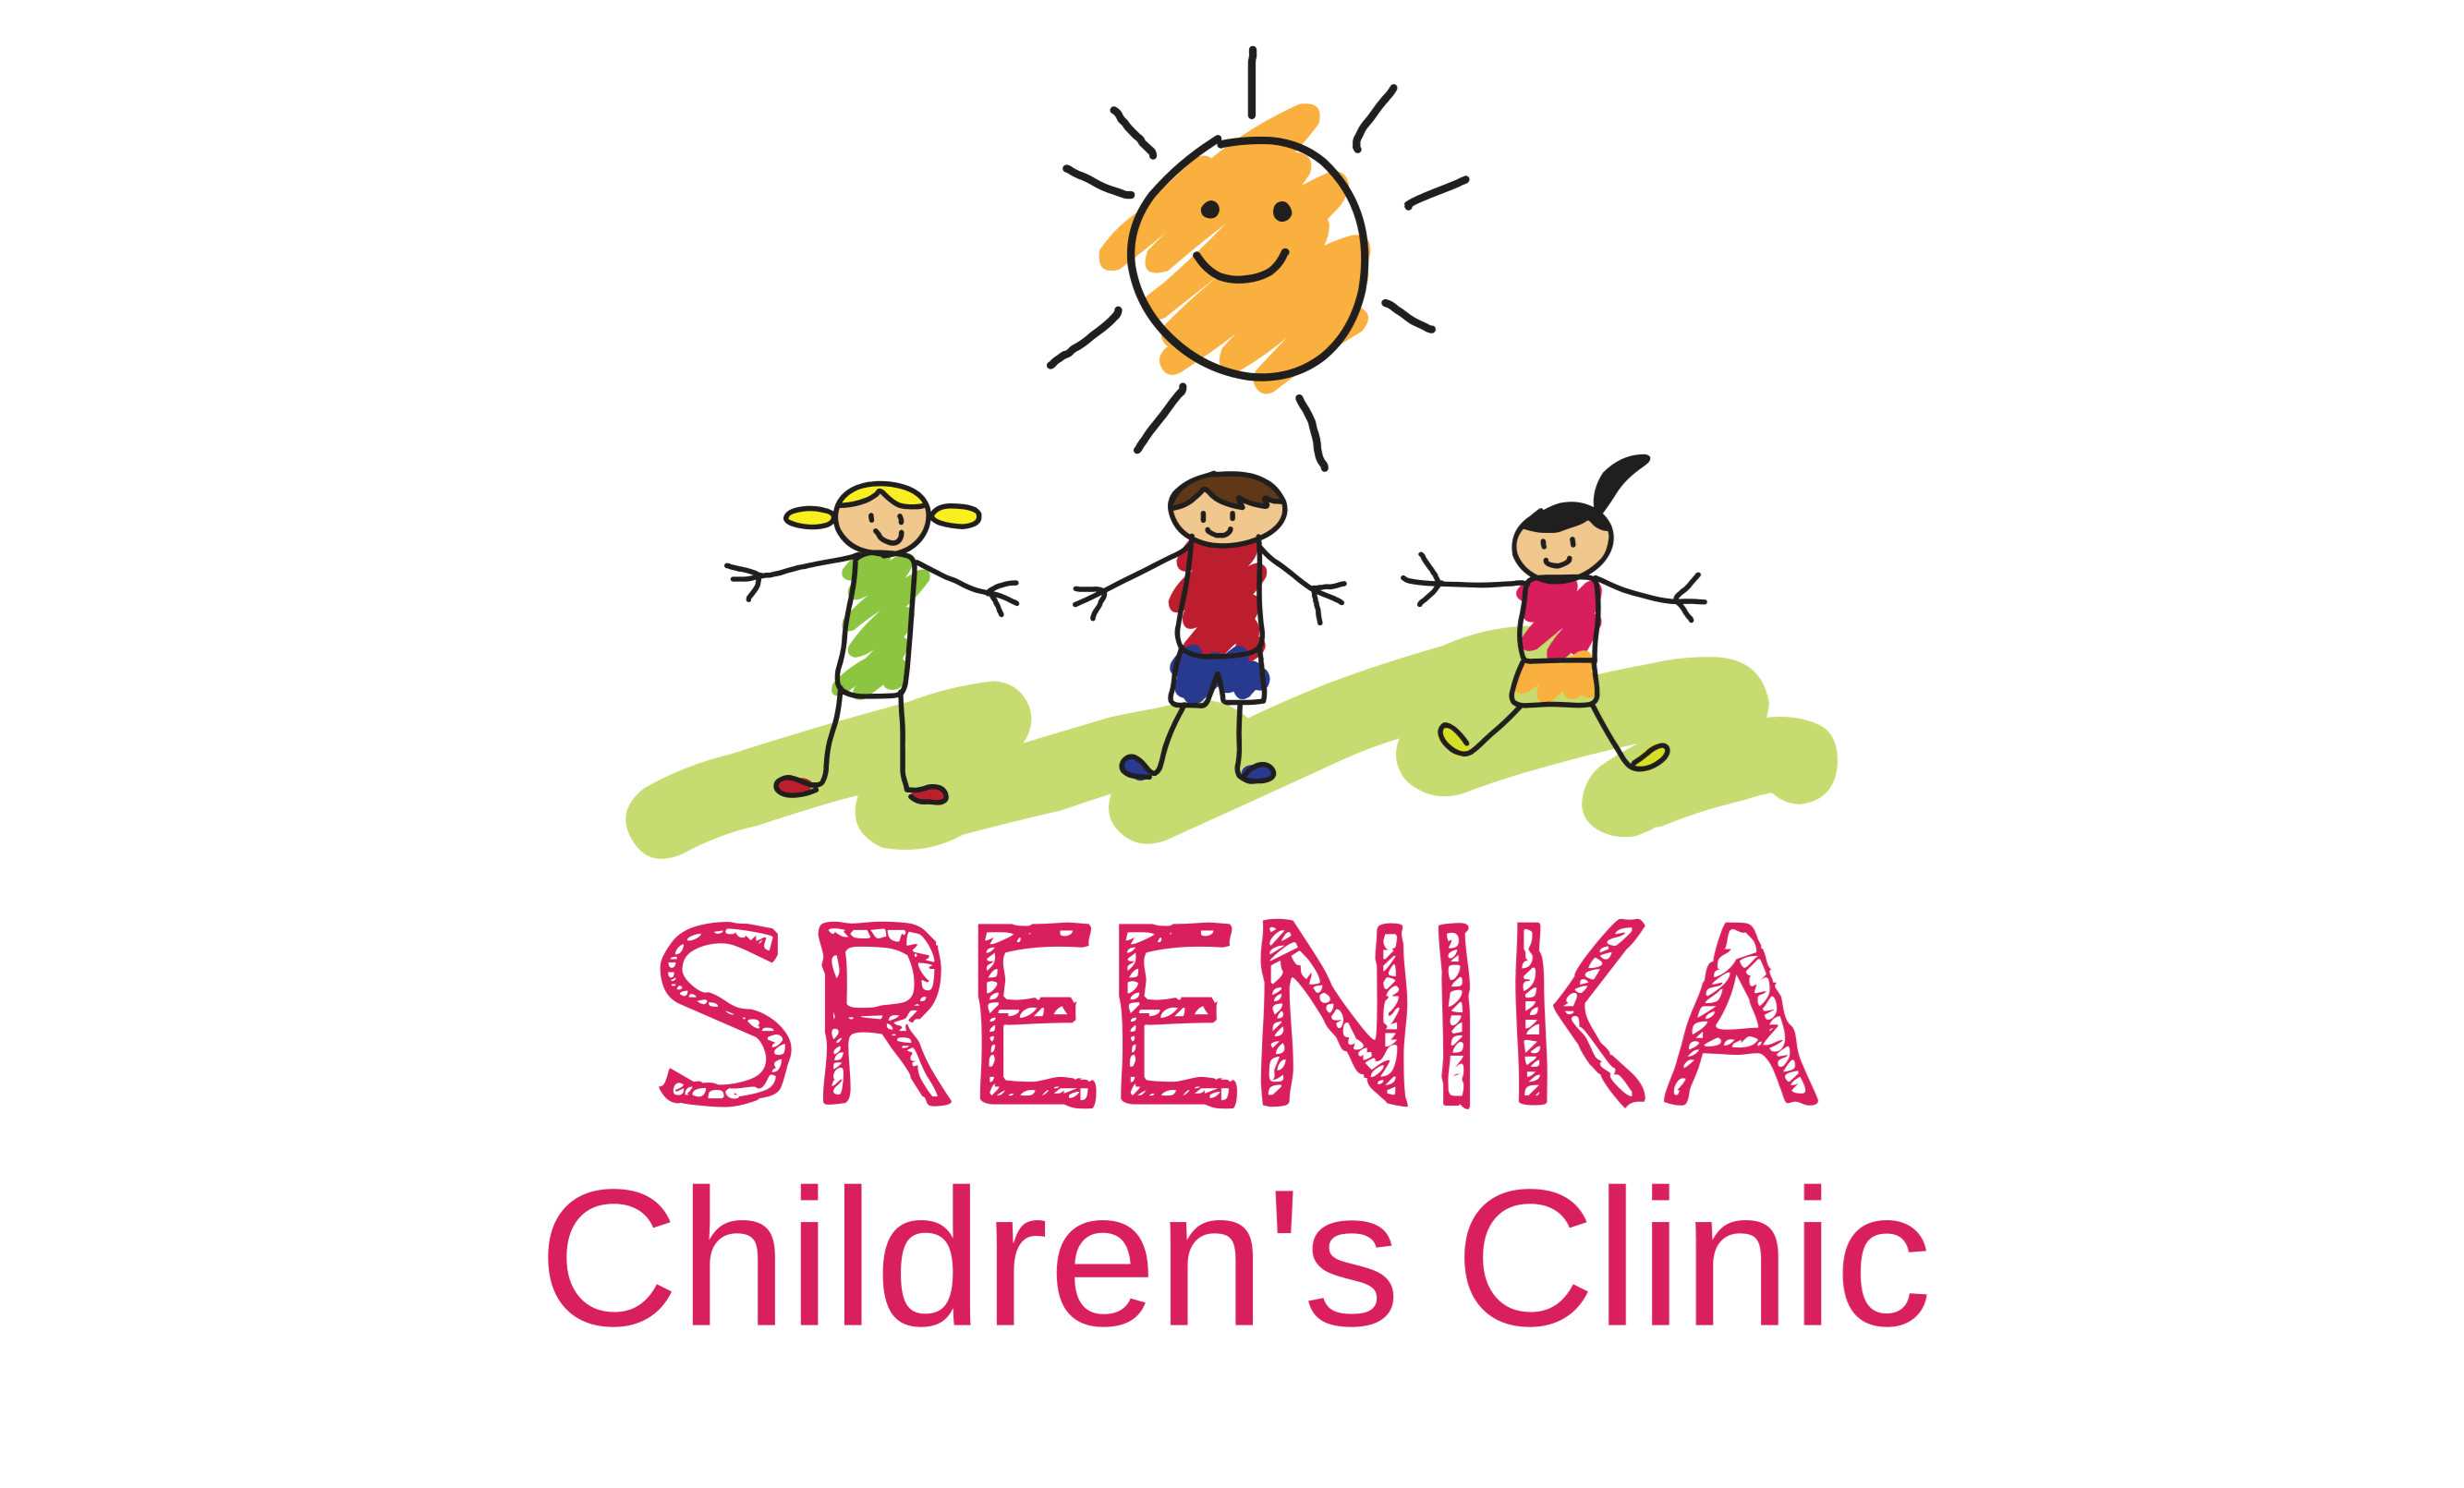 Sreenika Children's clinic